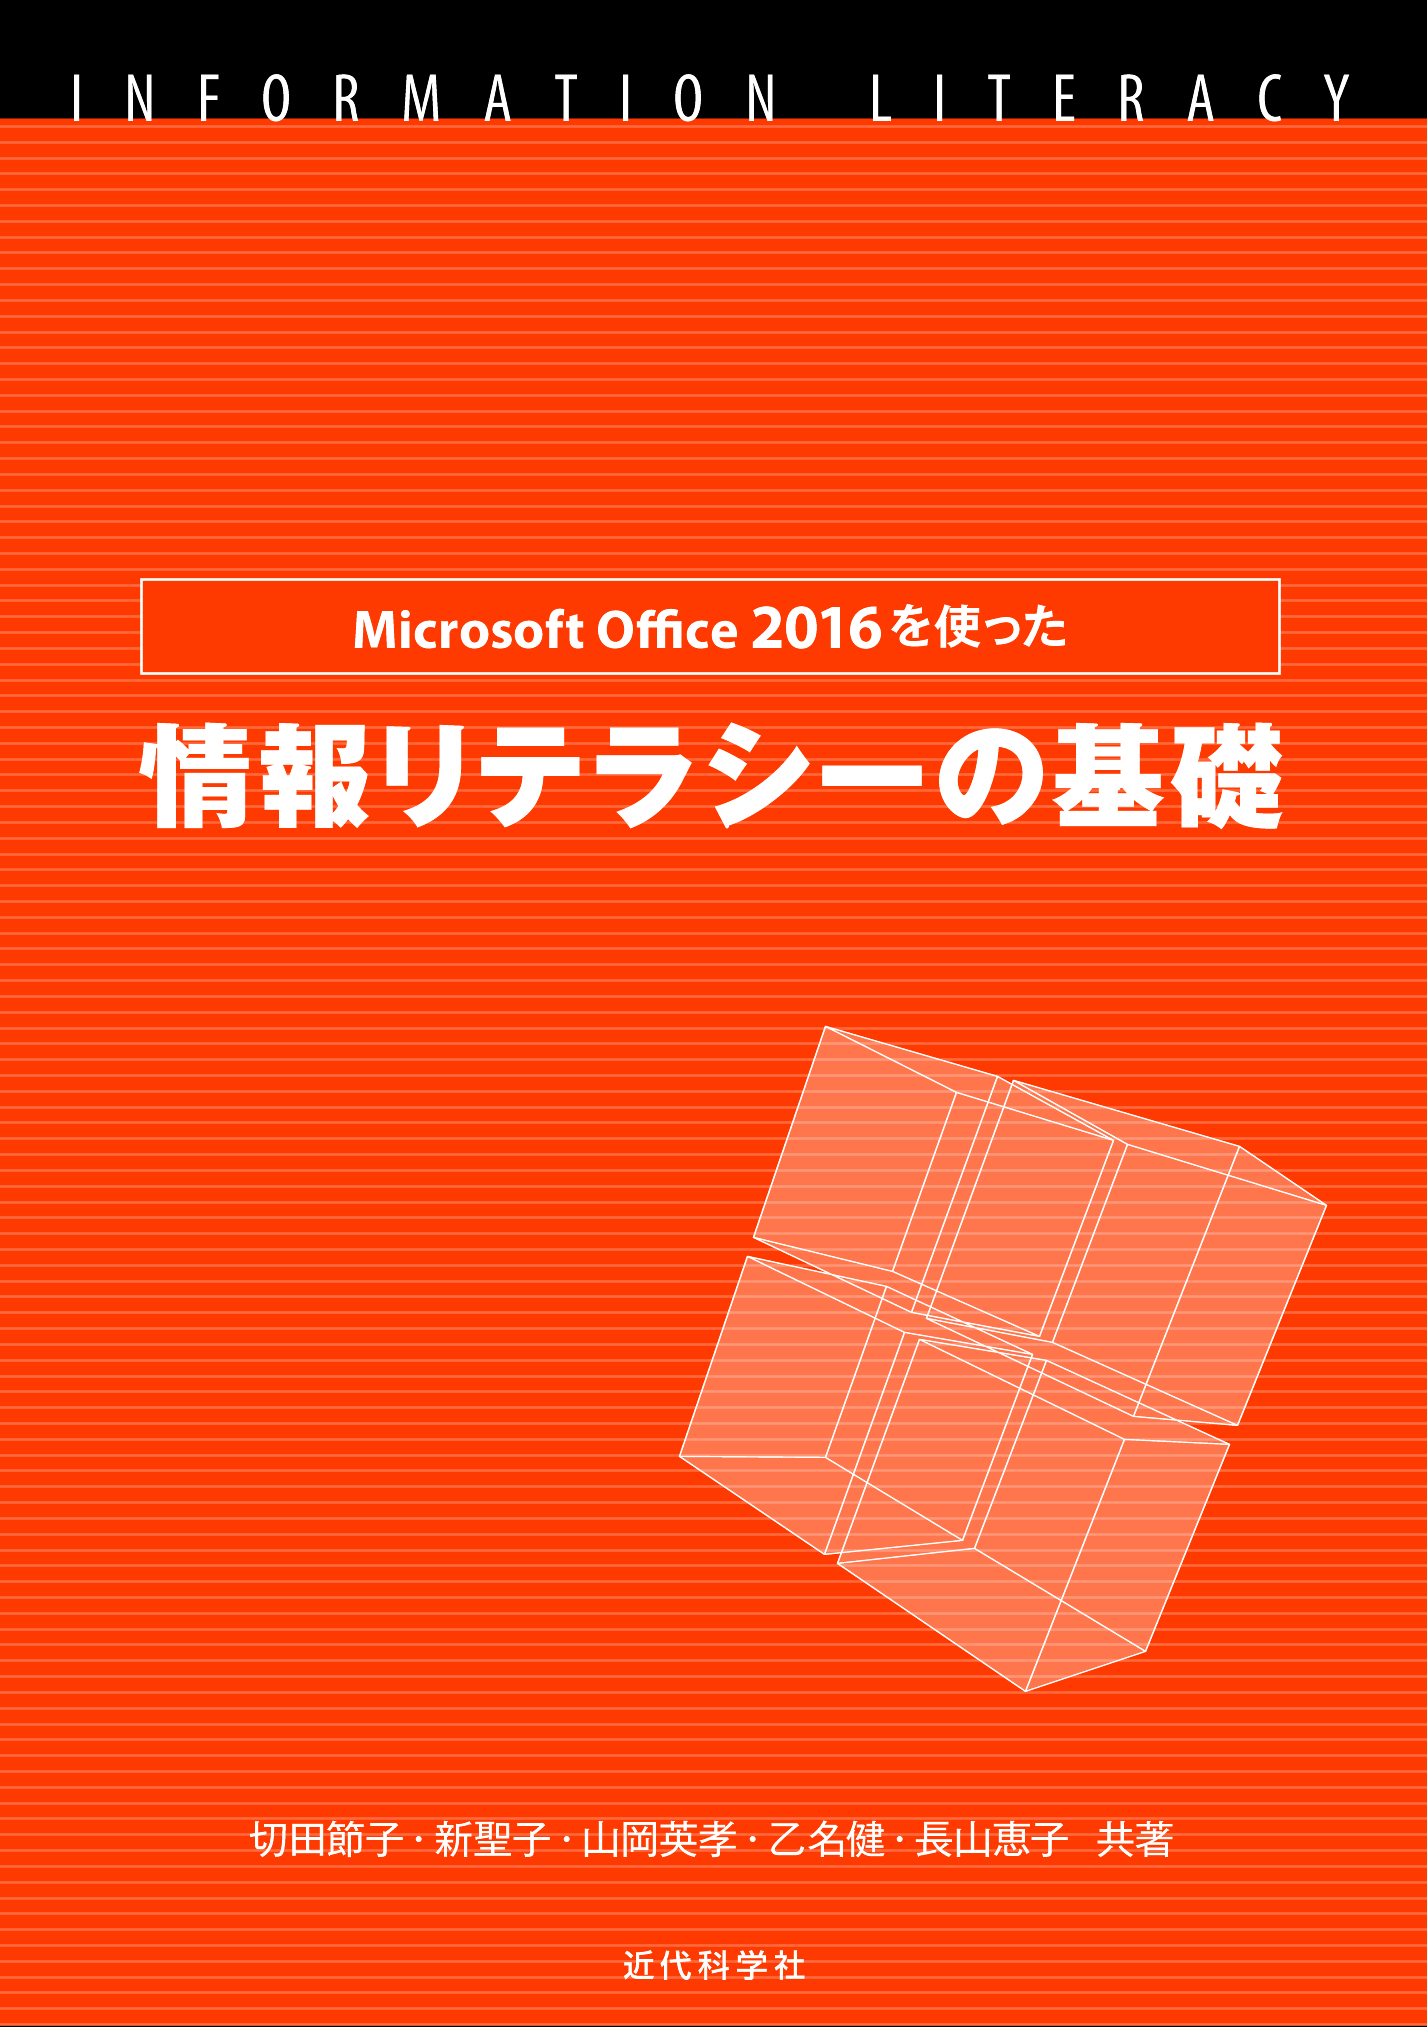 Microsoft Office 2016を使った情報リテラシーの基礎 | 近代科学社